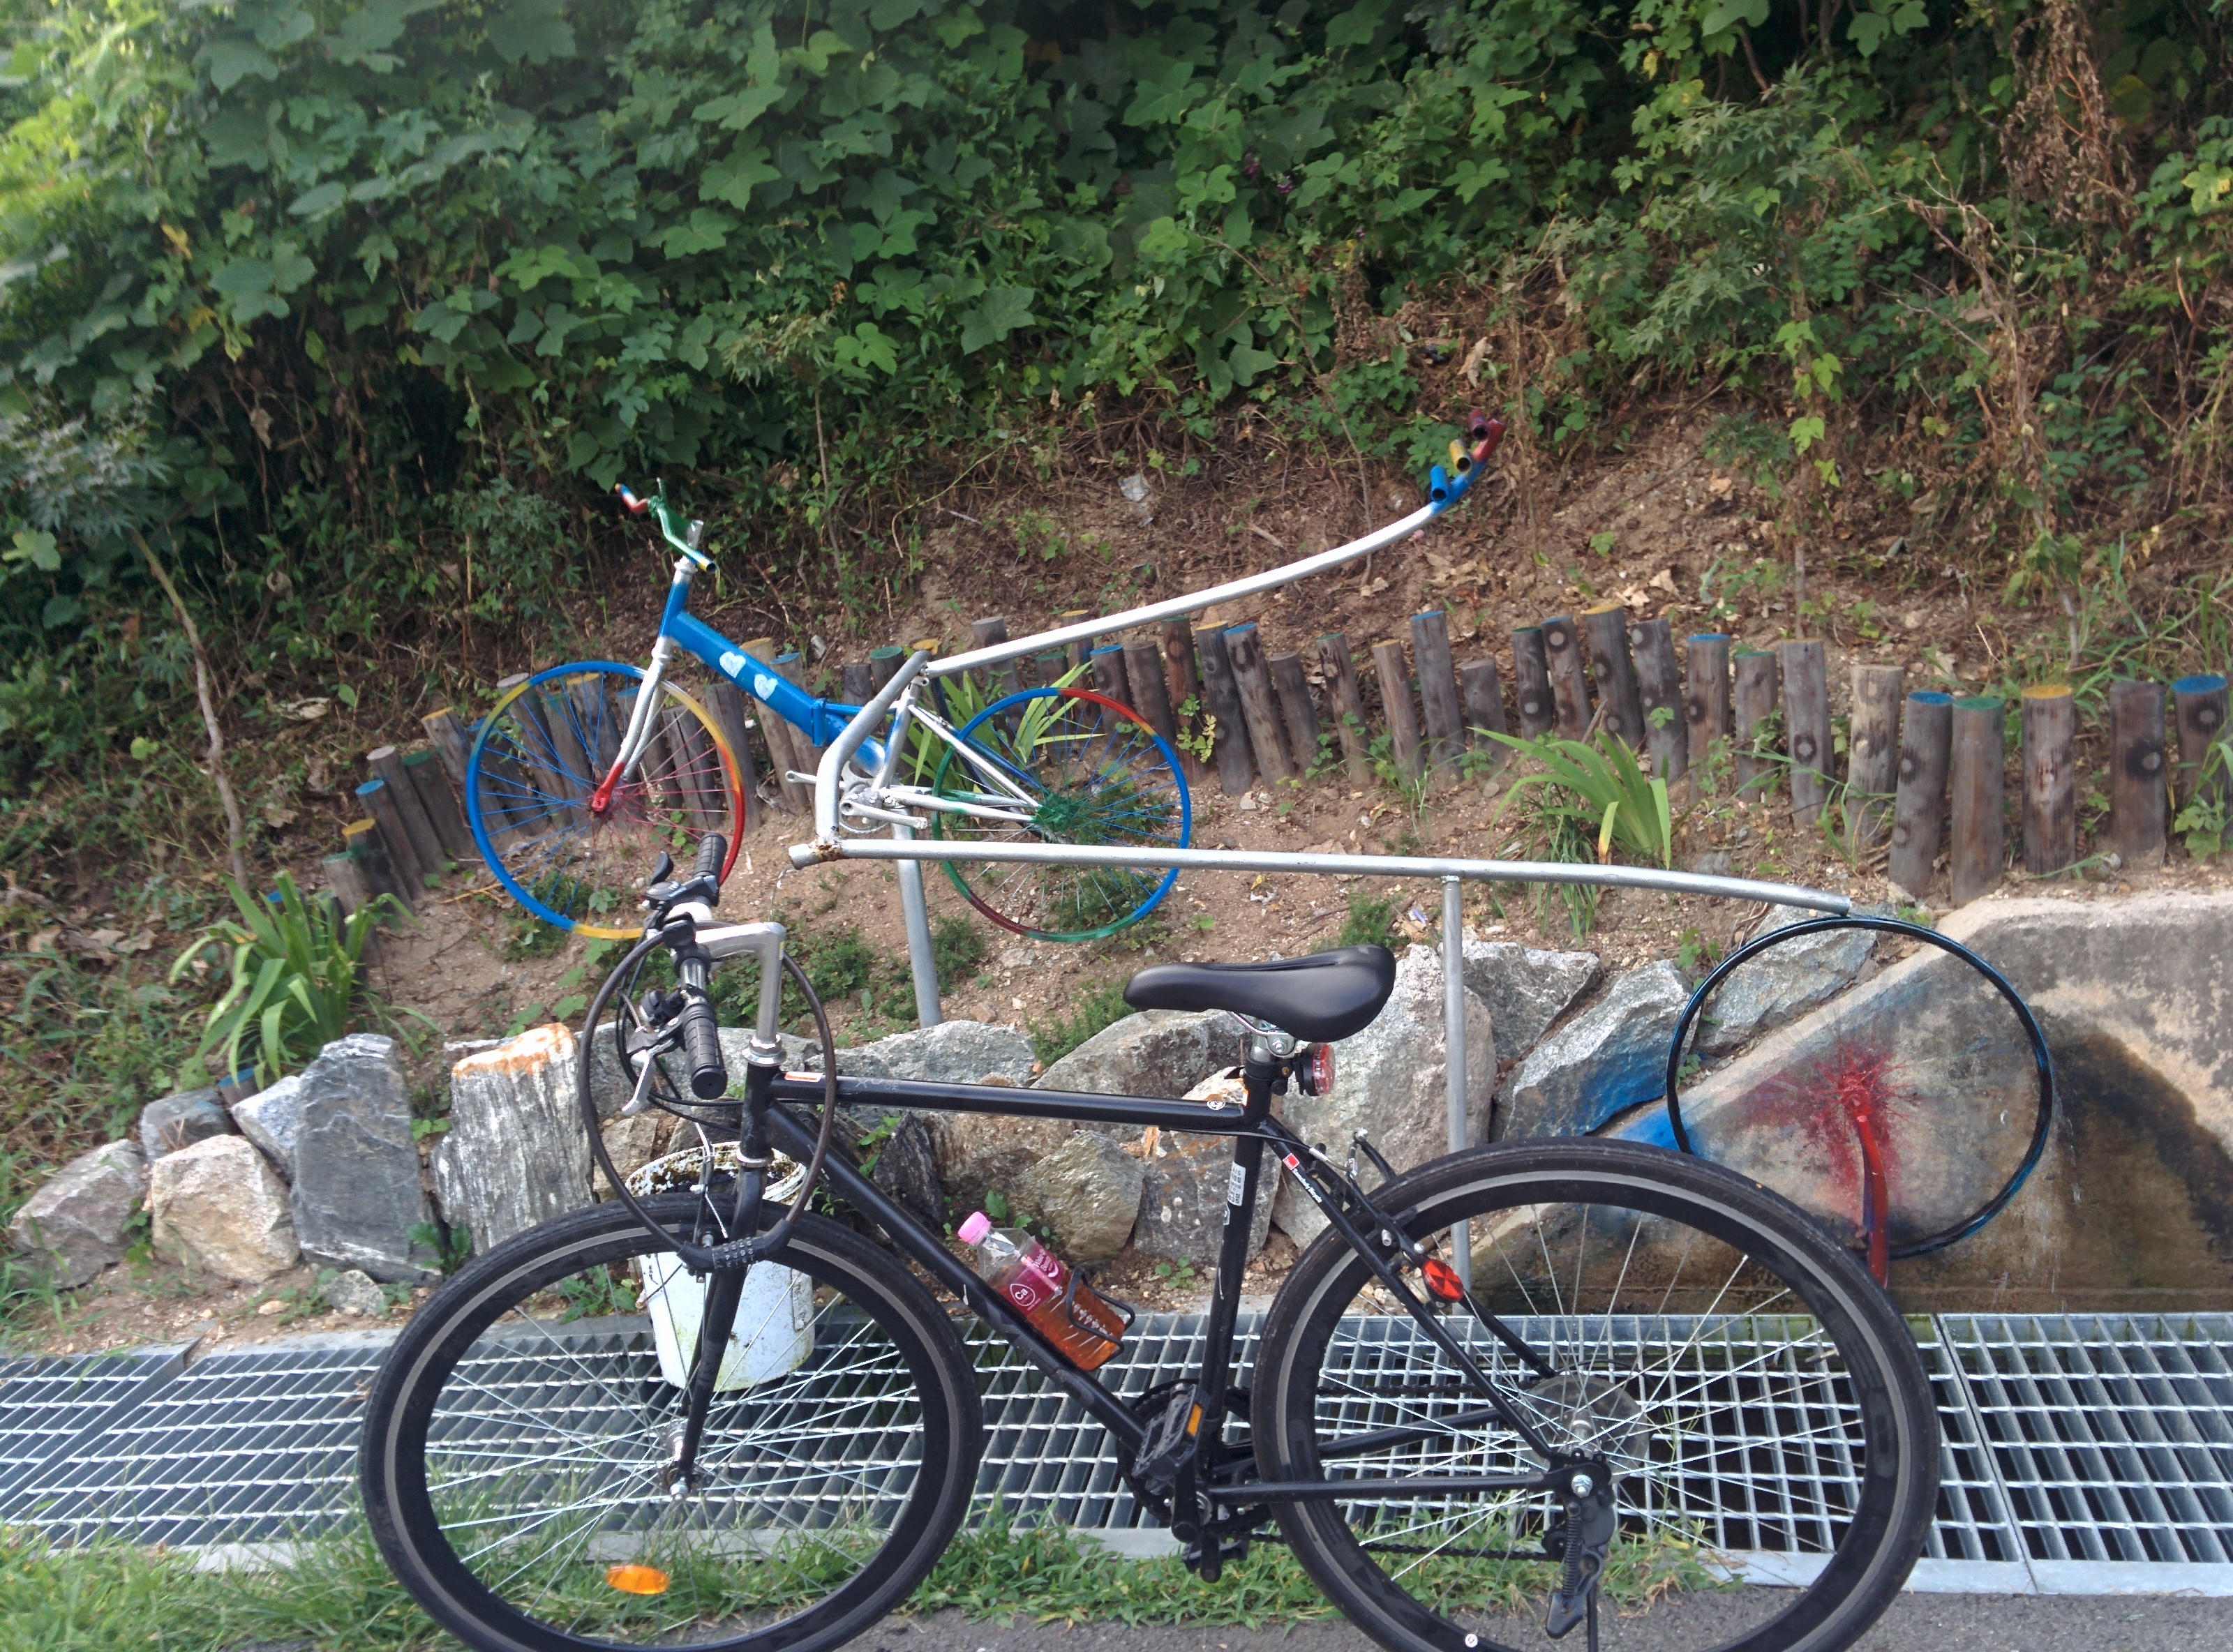 IMG_20150823_174241.jpg 세종시 자전거도로에는 자전거 조각이 몇 개 있다.